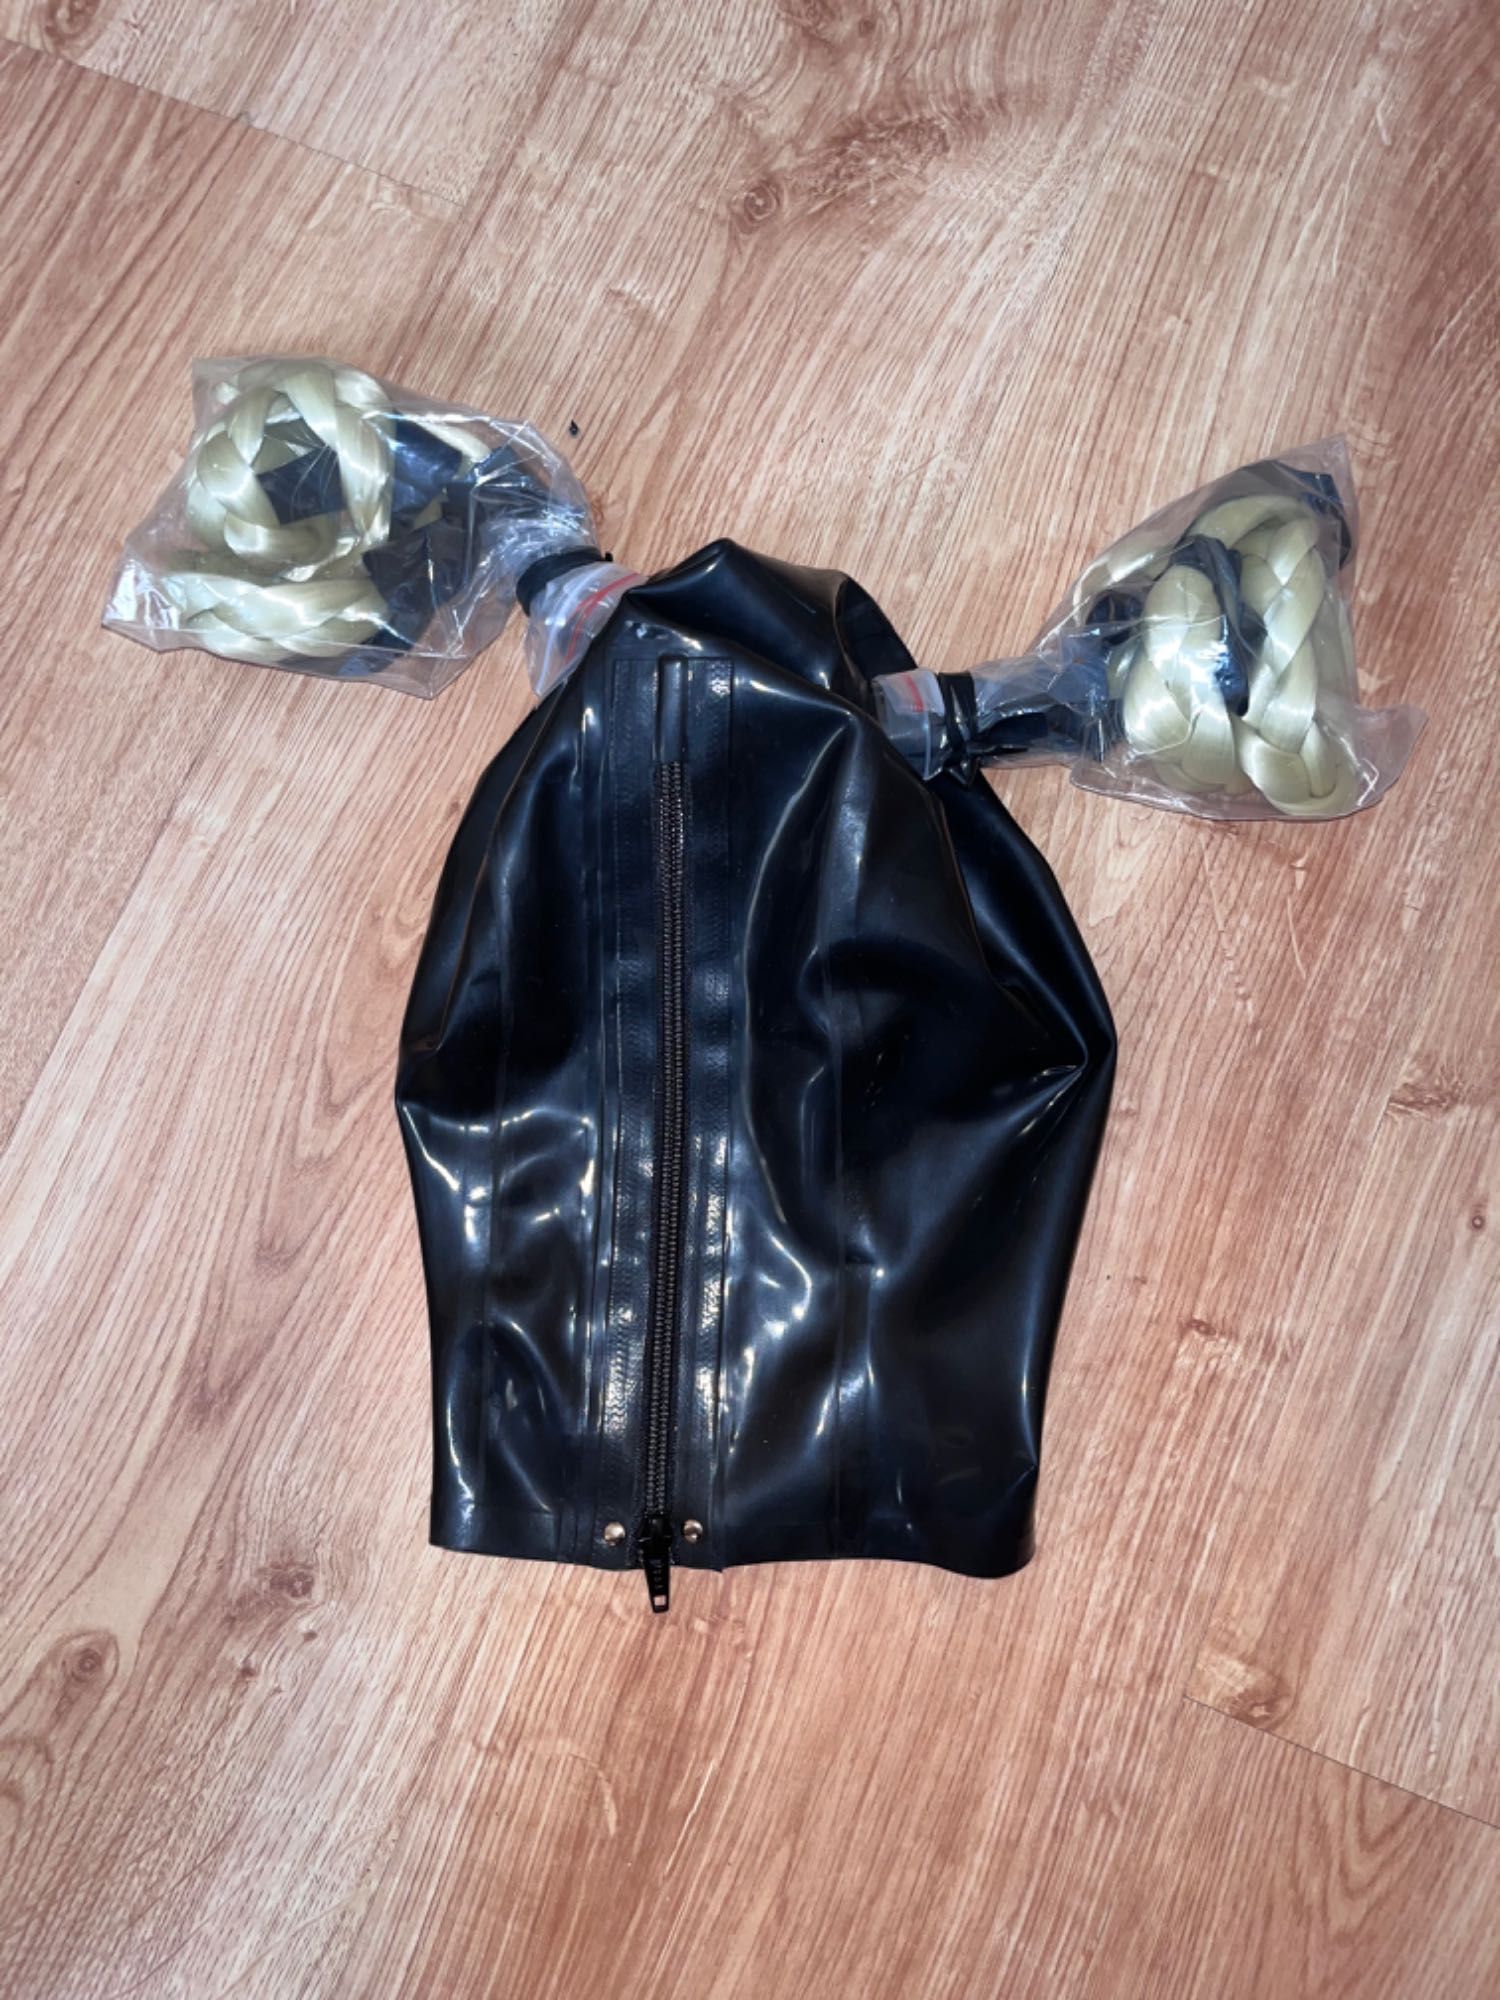 802a/Maska Teatr Bal kostium latex lateks kuce blond ze wstążkami M